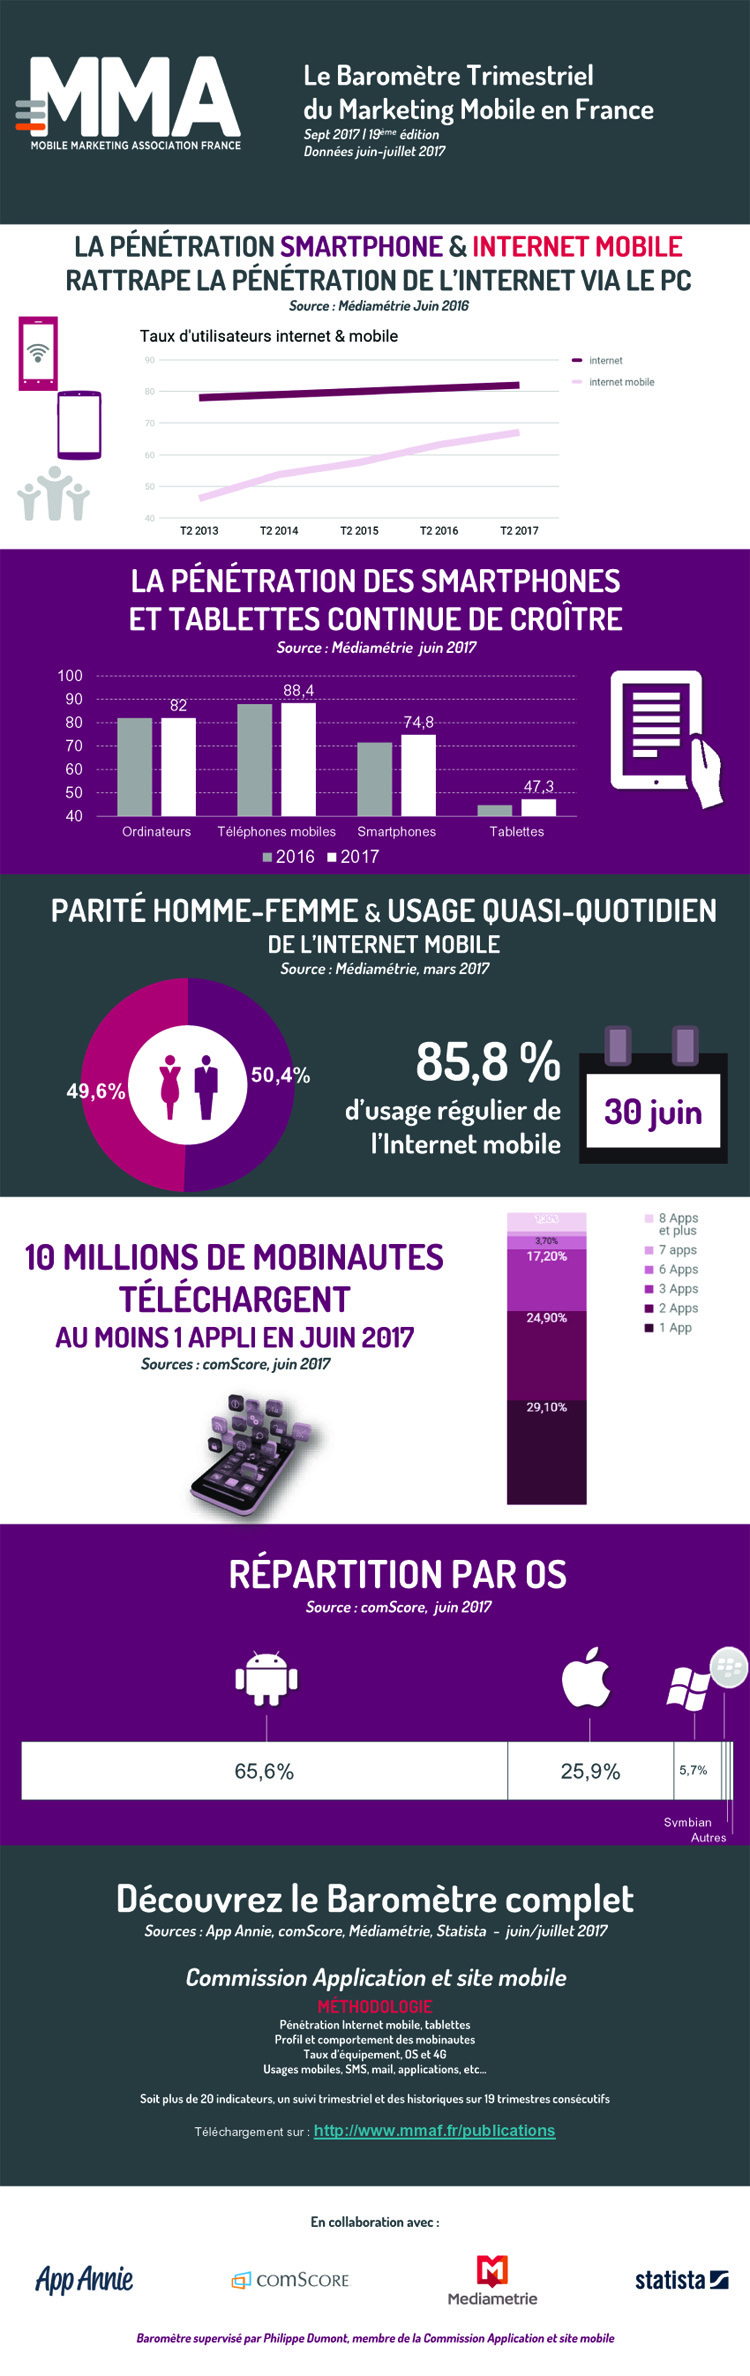 Plus de 10 millions de Français téléchargent des applications mobiles chaque mois